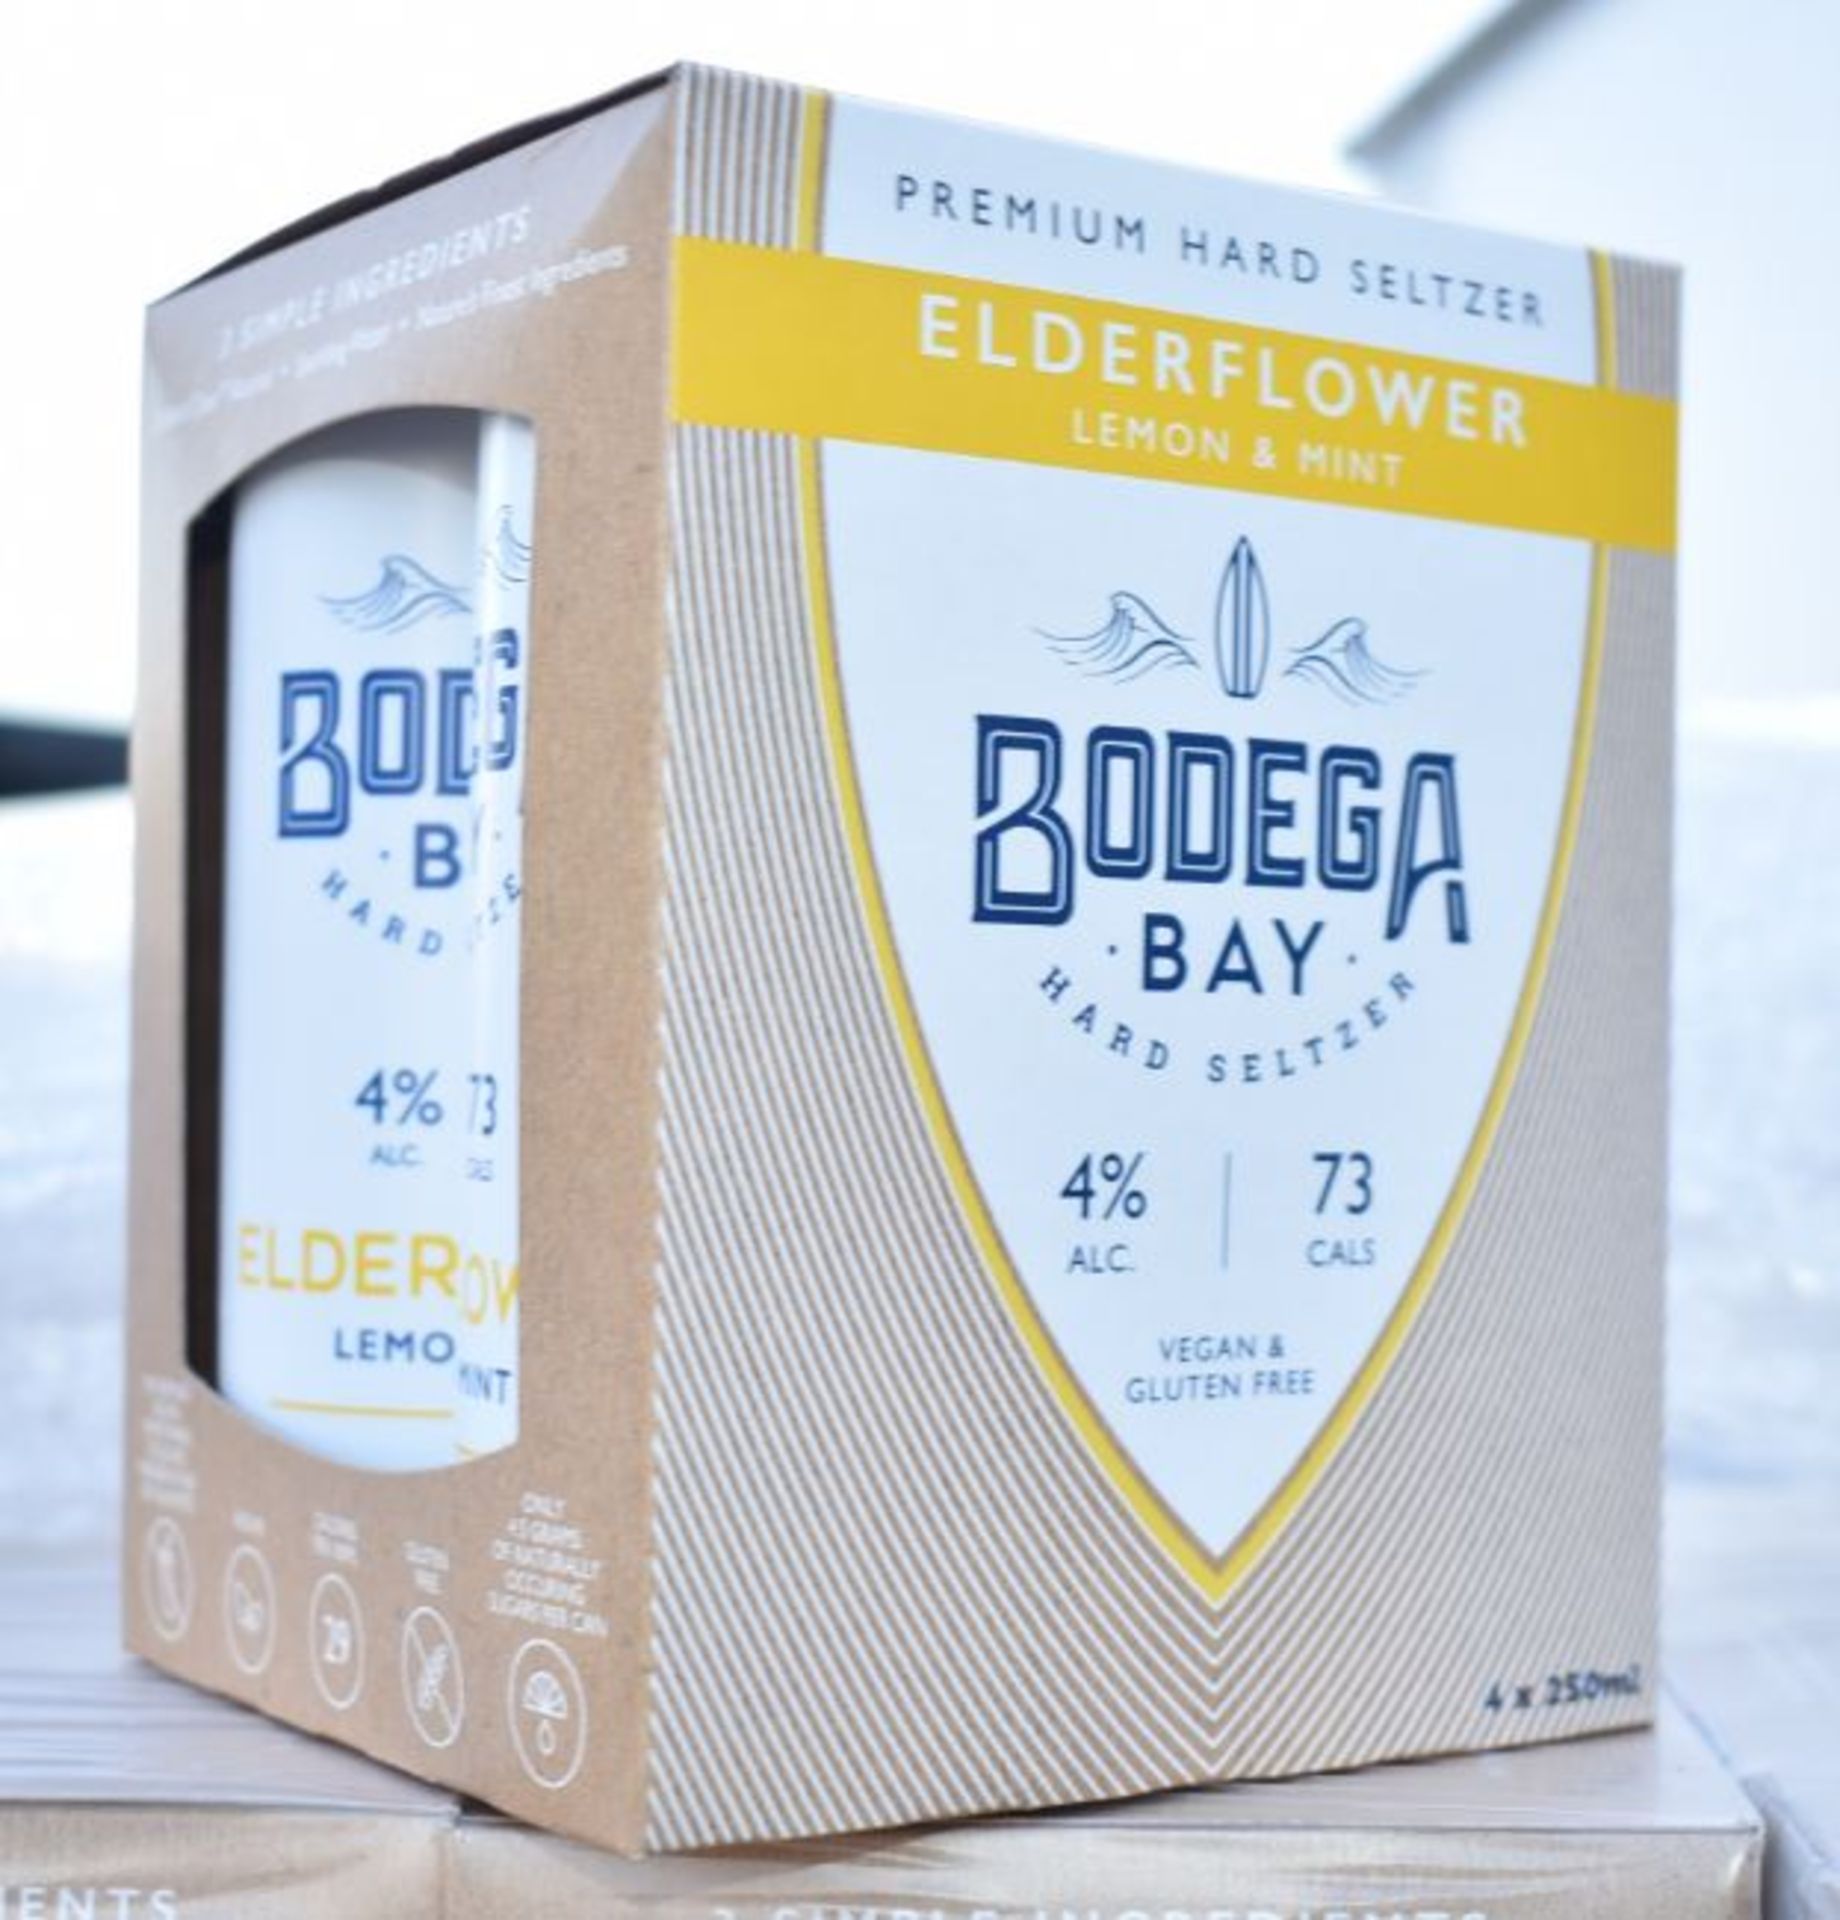 24 x Bodega Bay Hard Seltzer 250ml Alcoholic Sparkling Water Drinks - Elderflower Lemon & Mint - Image 9 of 9